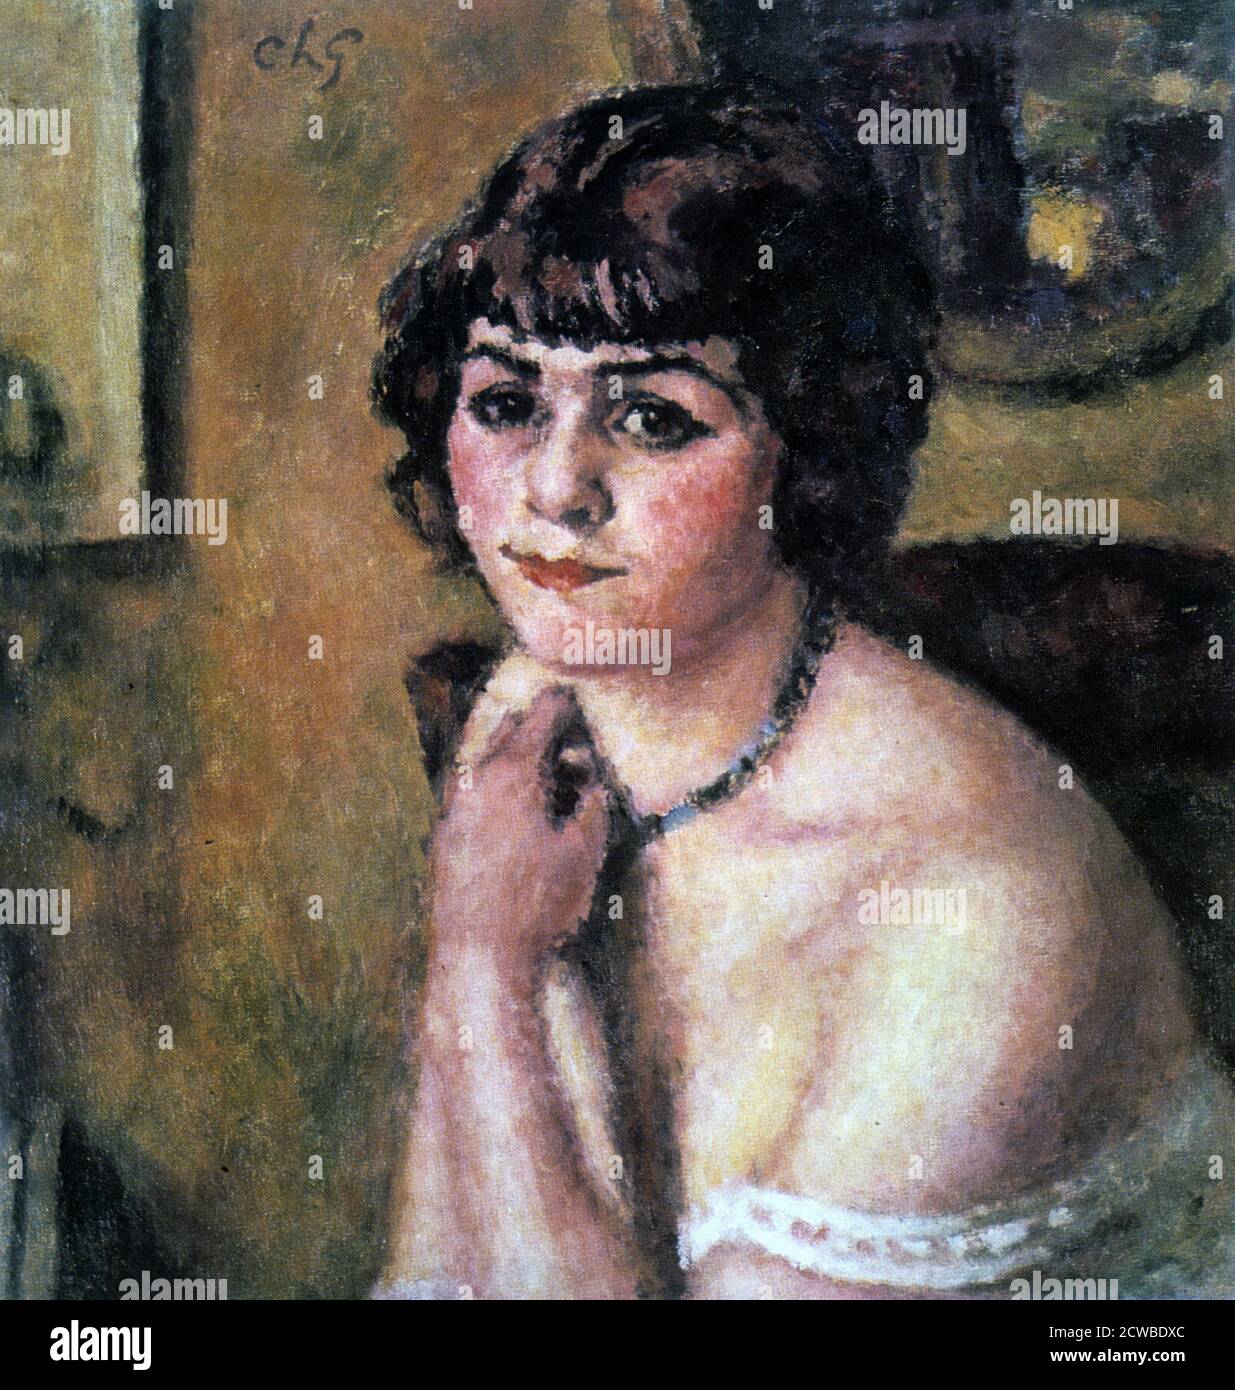 'Woman with Rose', 1901 artiste: Charles Guerin. En tant qu'admirateur de Monet et Renoir, Charles François Prosper Guerin a pris la technique des impressionnistes et l'a appliquée dans son propre style, avec une utilisation inhabituelle et originale de la couleur. Banque D'Images